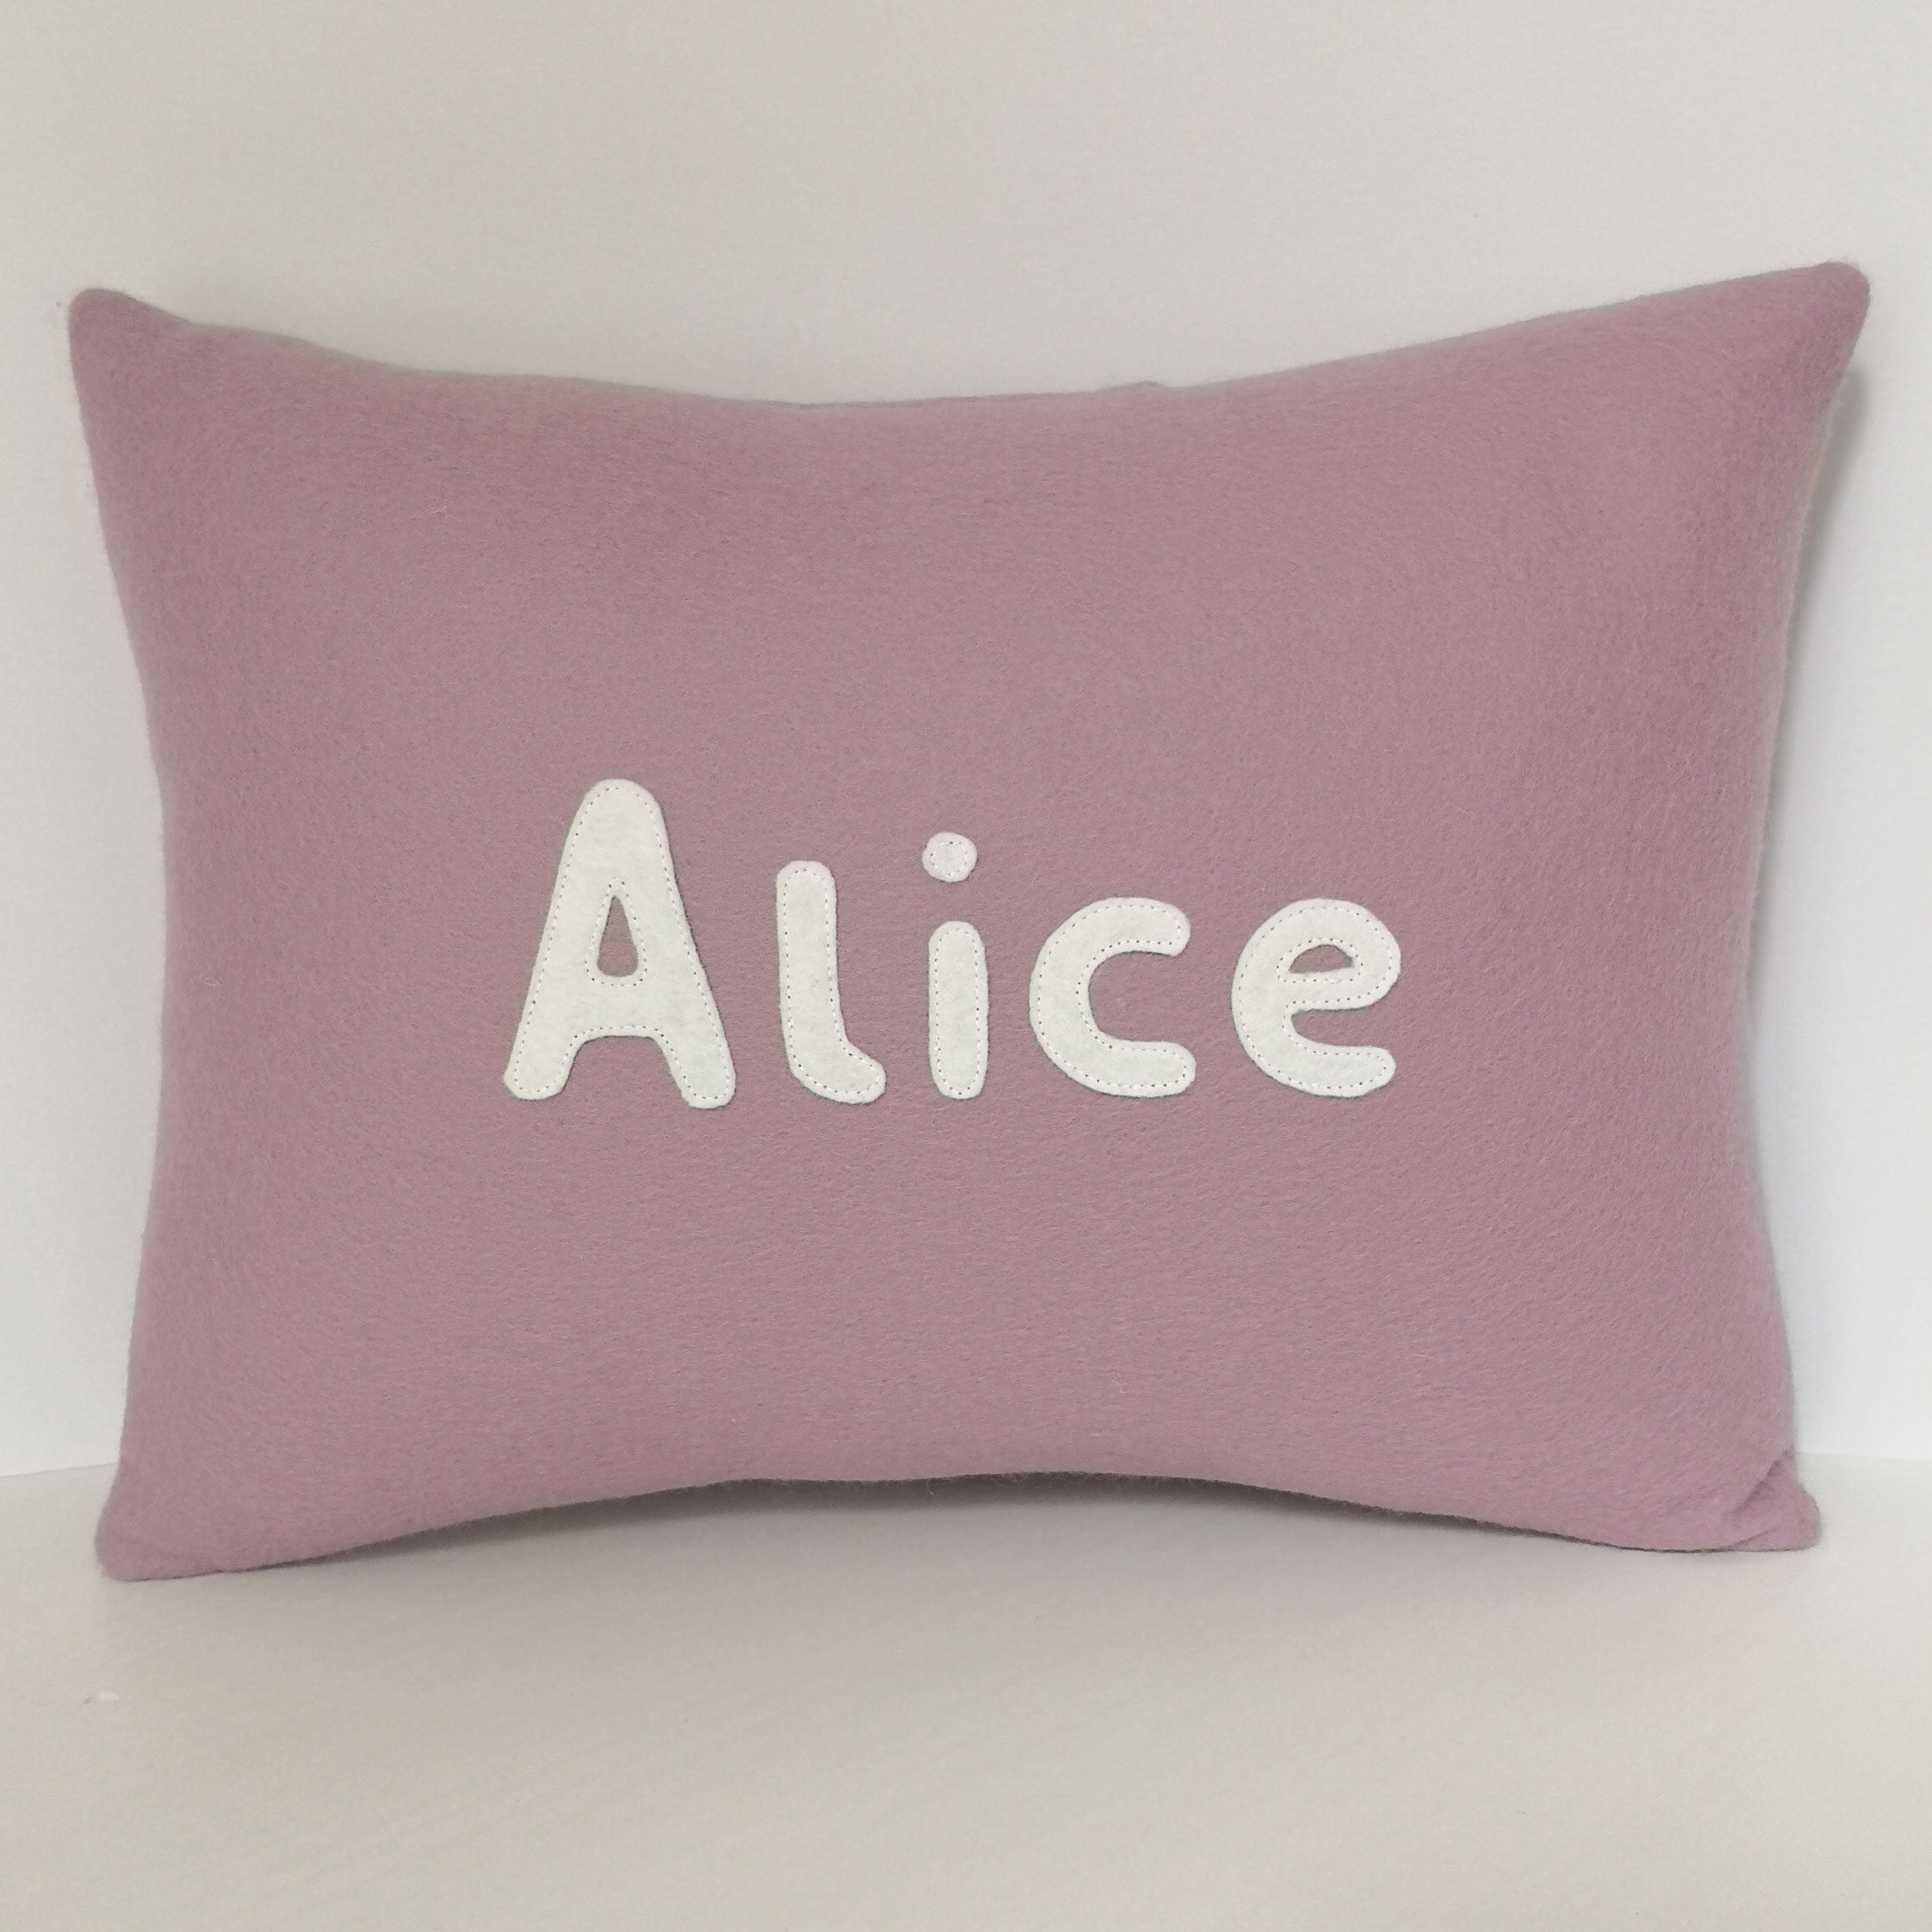 personalised name cushion in lavender purple wool felt